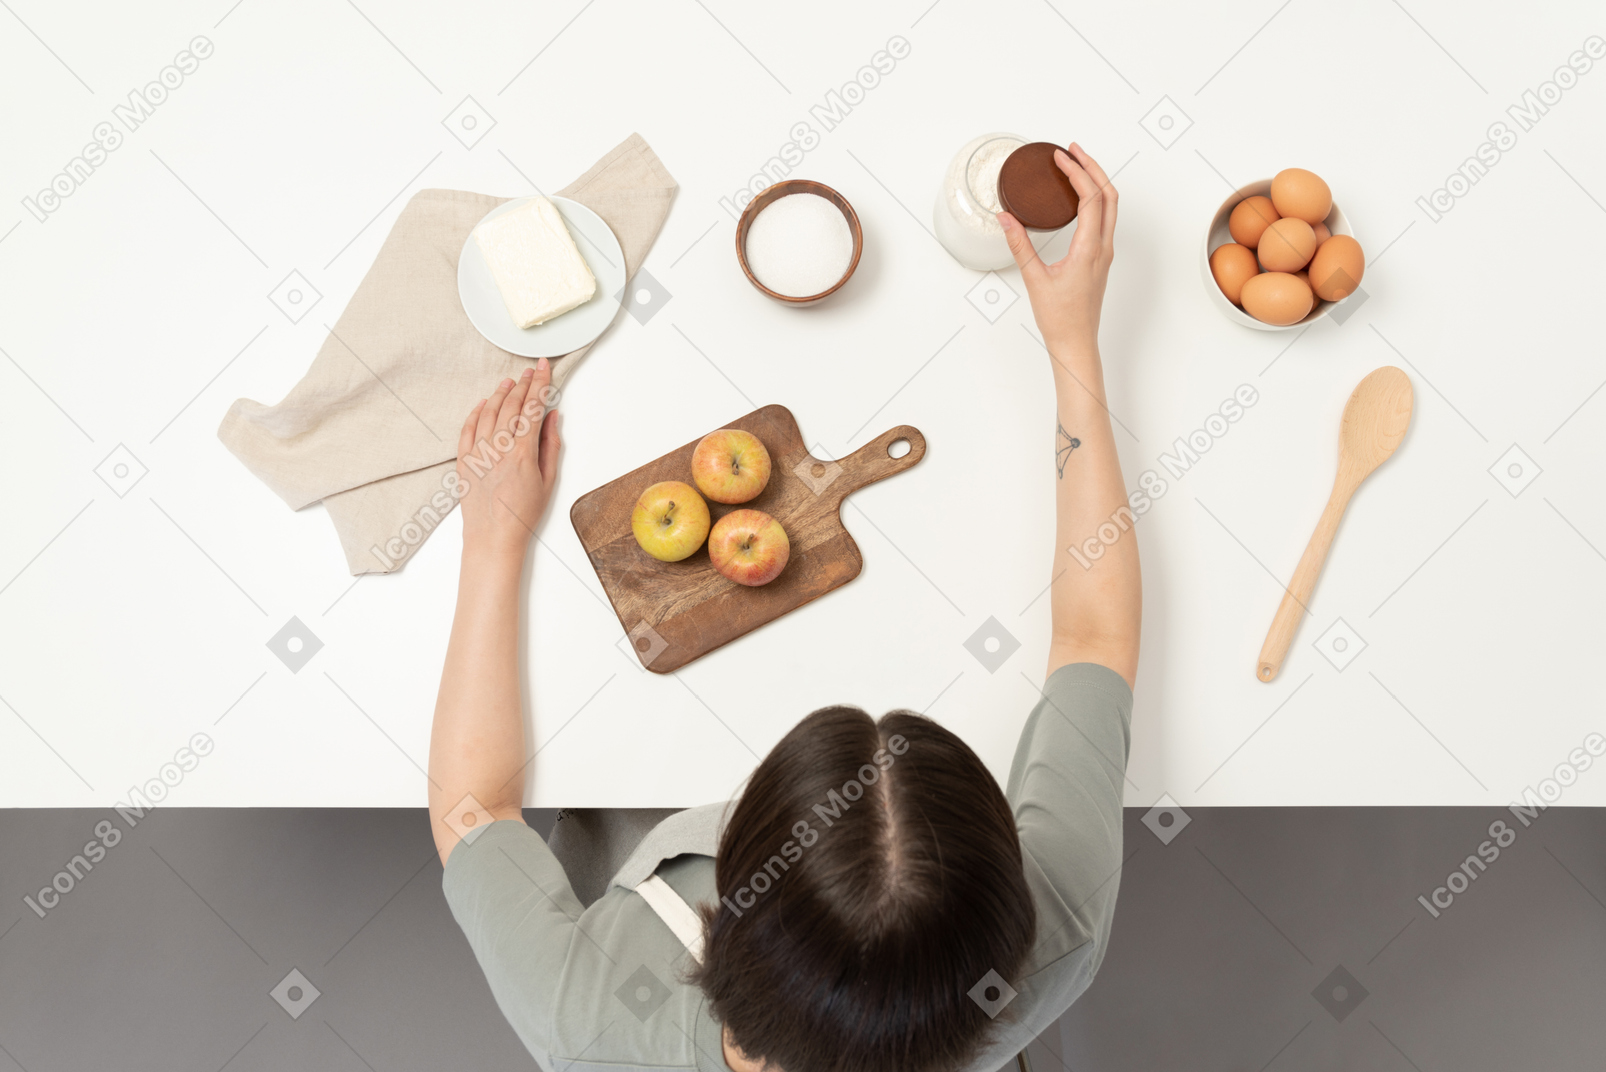 A female baker preparing baking ingredients